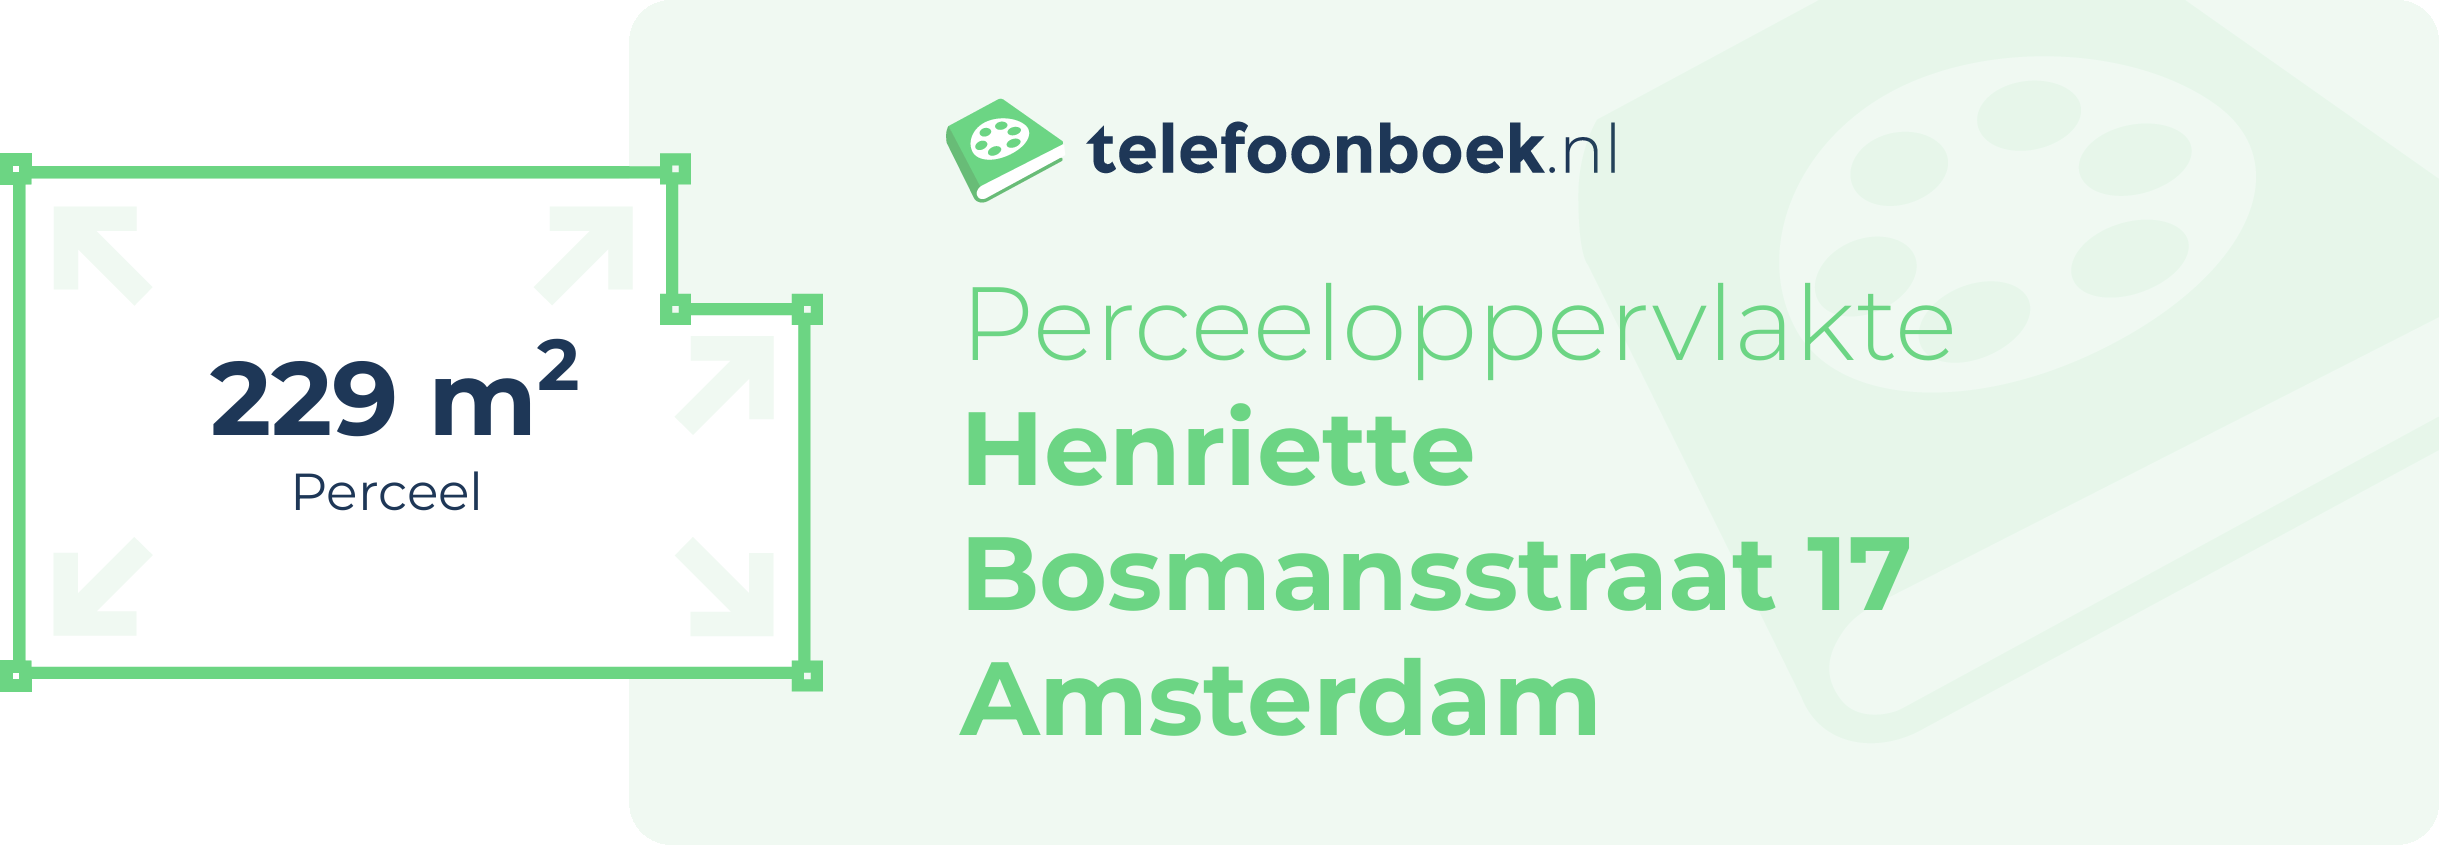 Perceeloppervlakte Henriette Bosmansstraat 17 Amsterdam